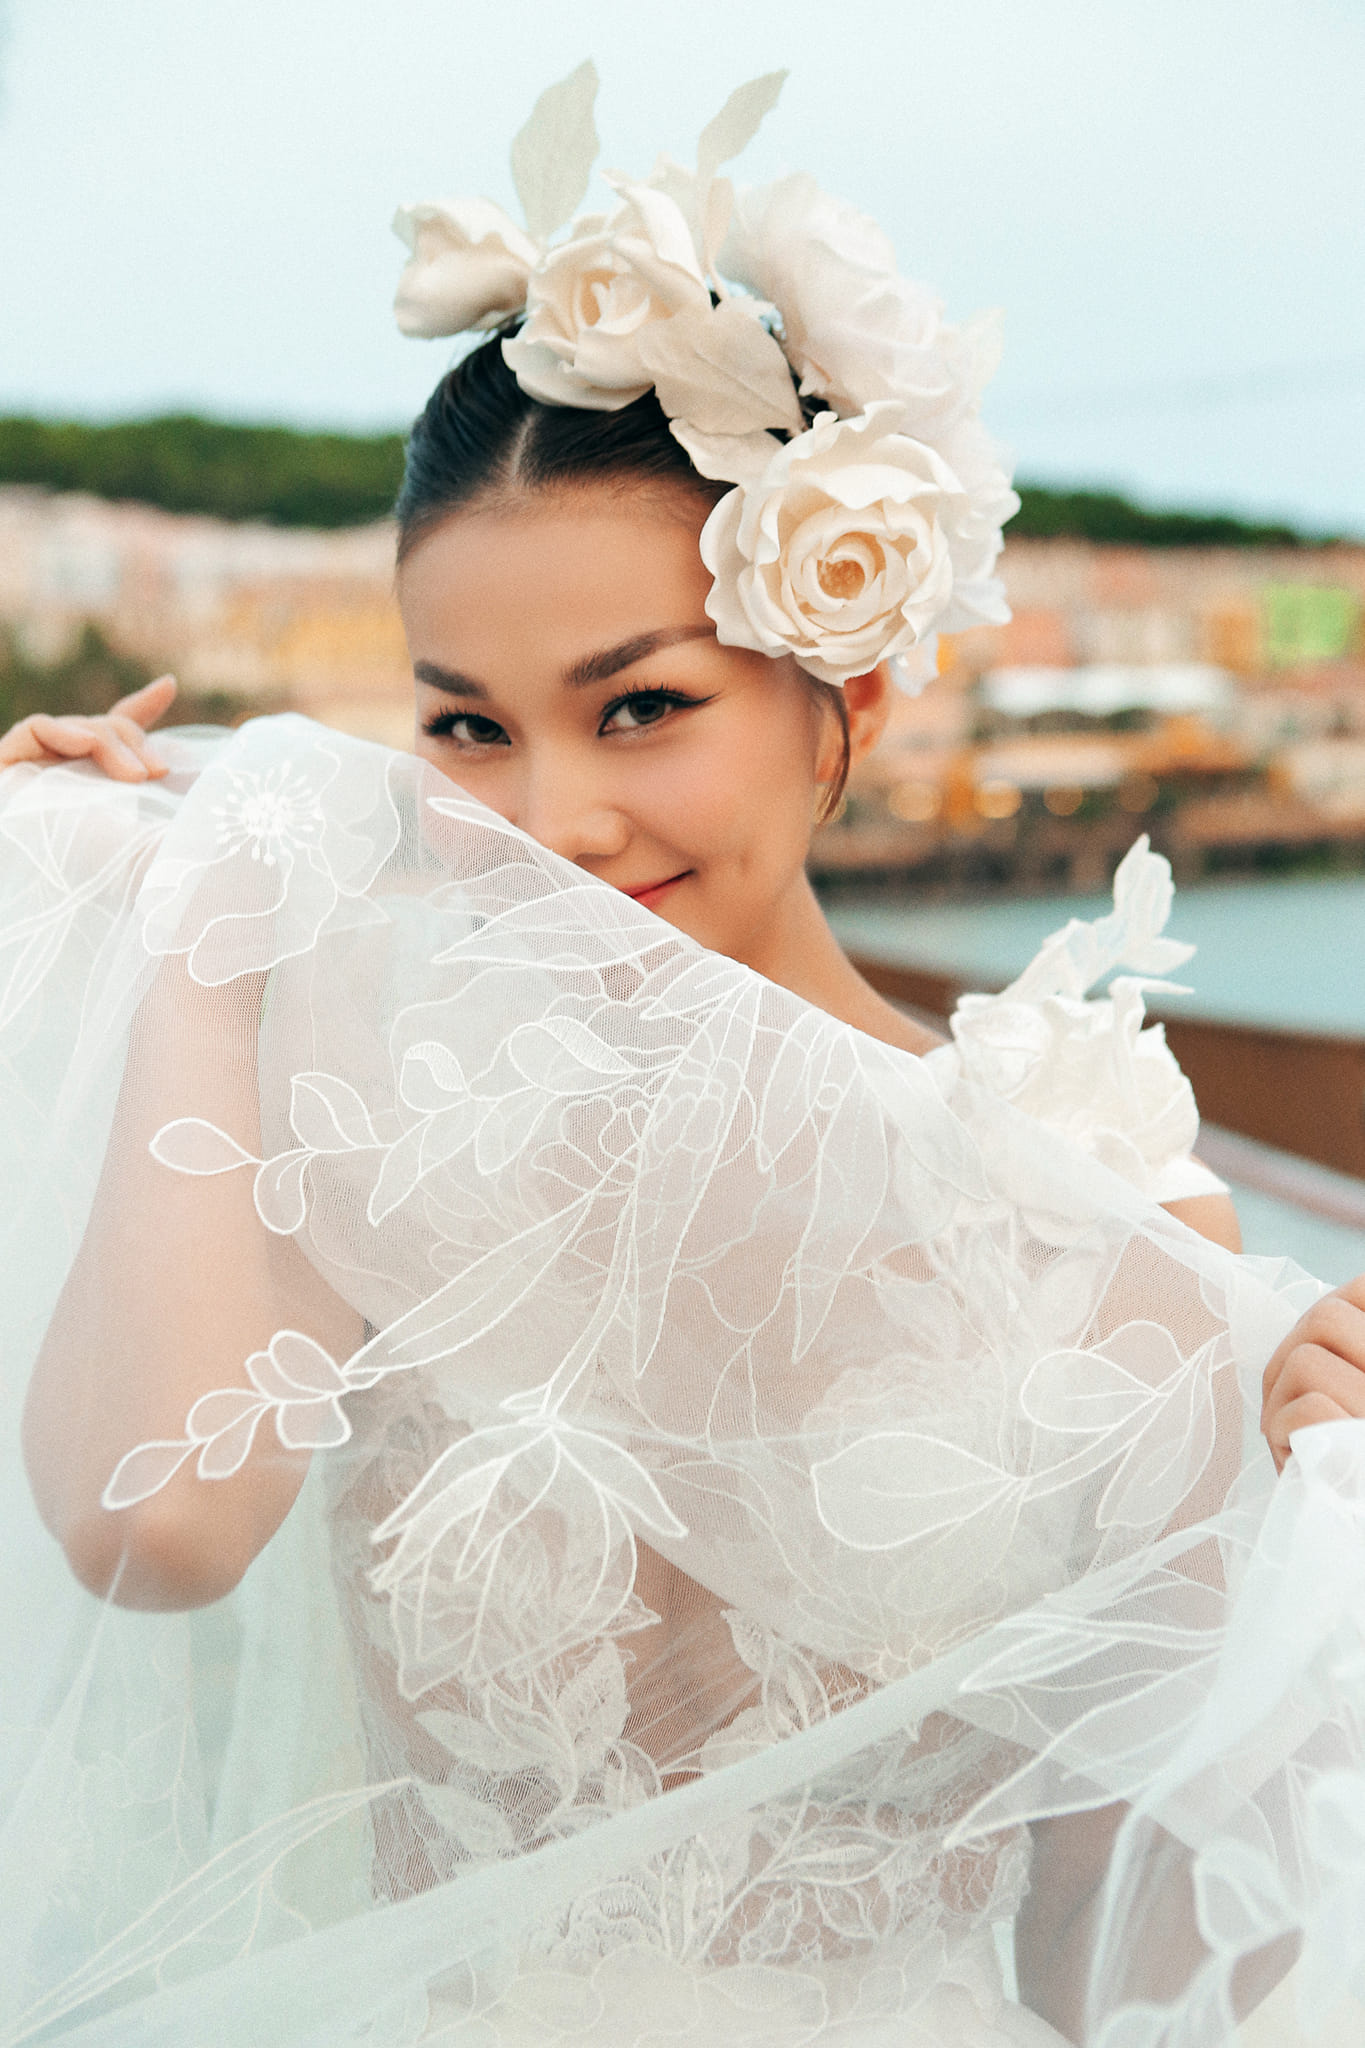 5 ngày trước đám cưới, siêu mẫu Thanh Hằng chia sẻ bức ảnh không thể tình cảm hơn với chồng nhạc trưởng - ảnh 4